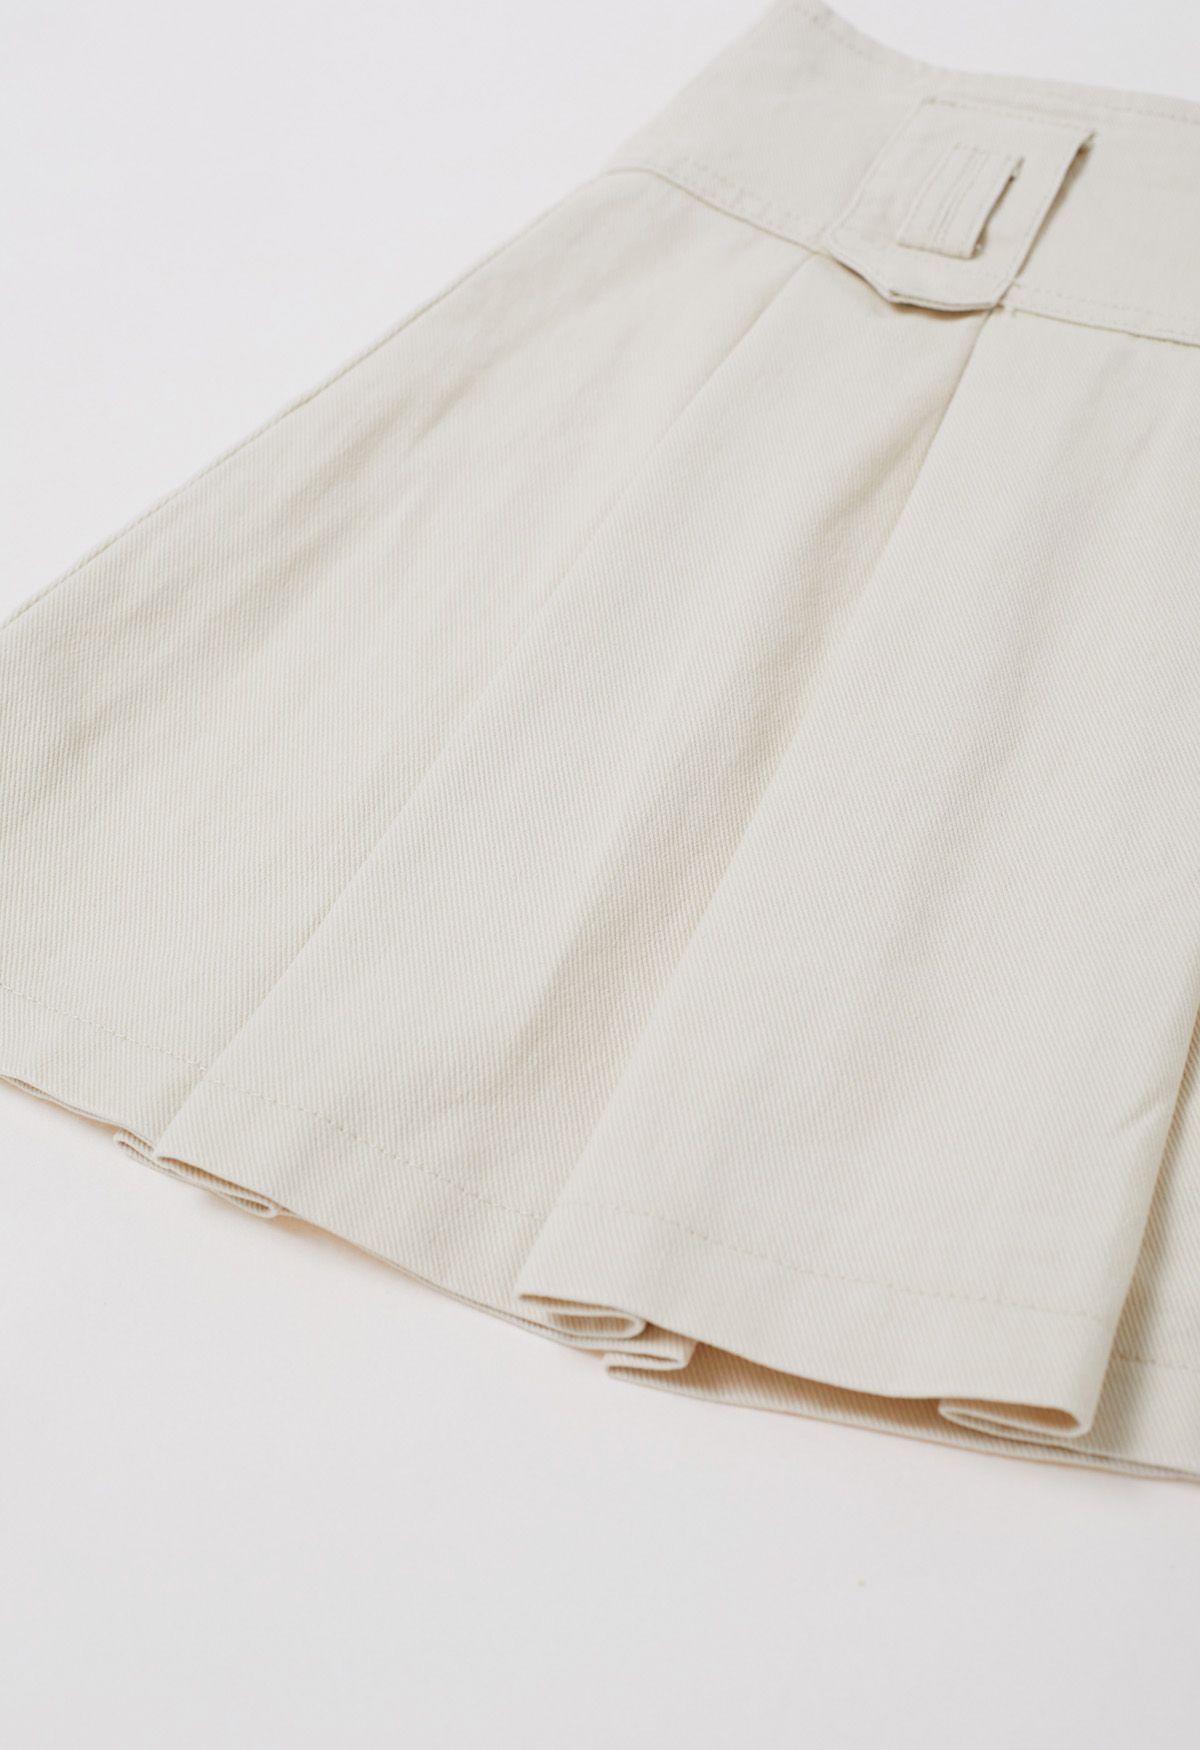 تنورة قصيرة من الدنيم ذات طيات كلاسيكية مع حزام باللون العاجي